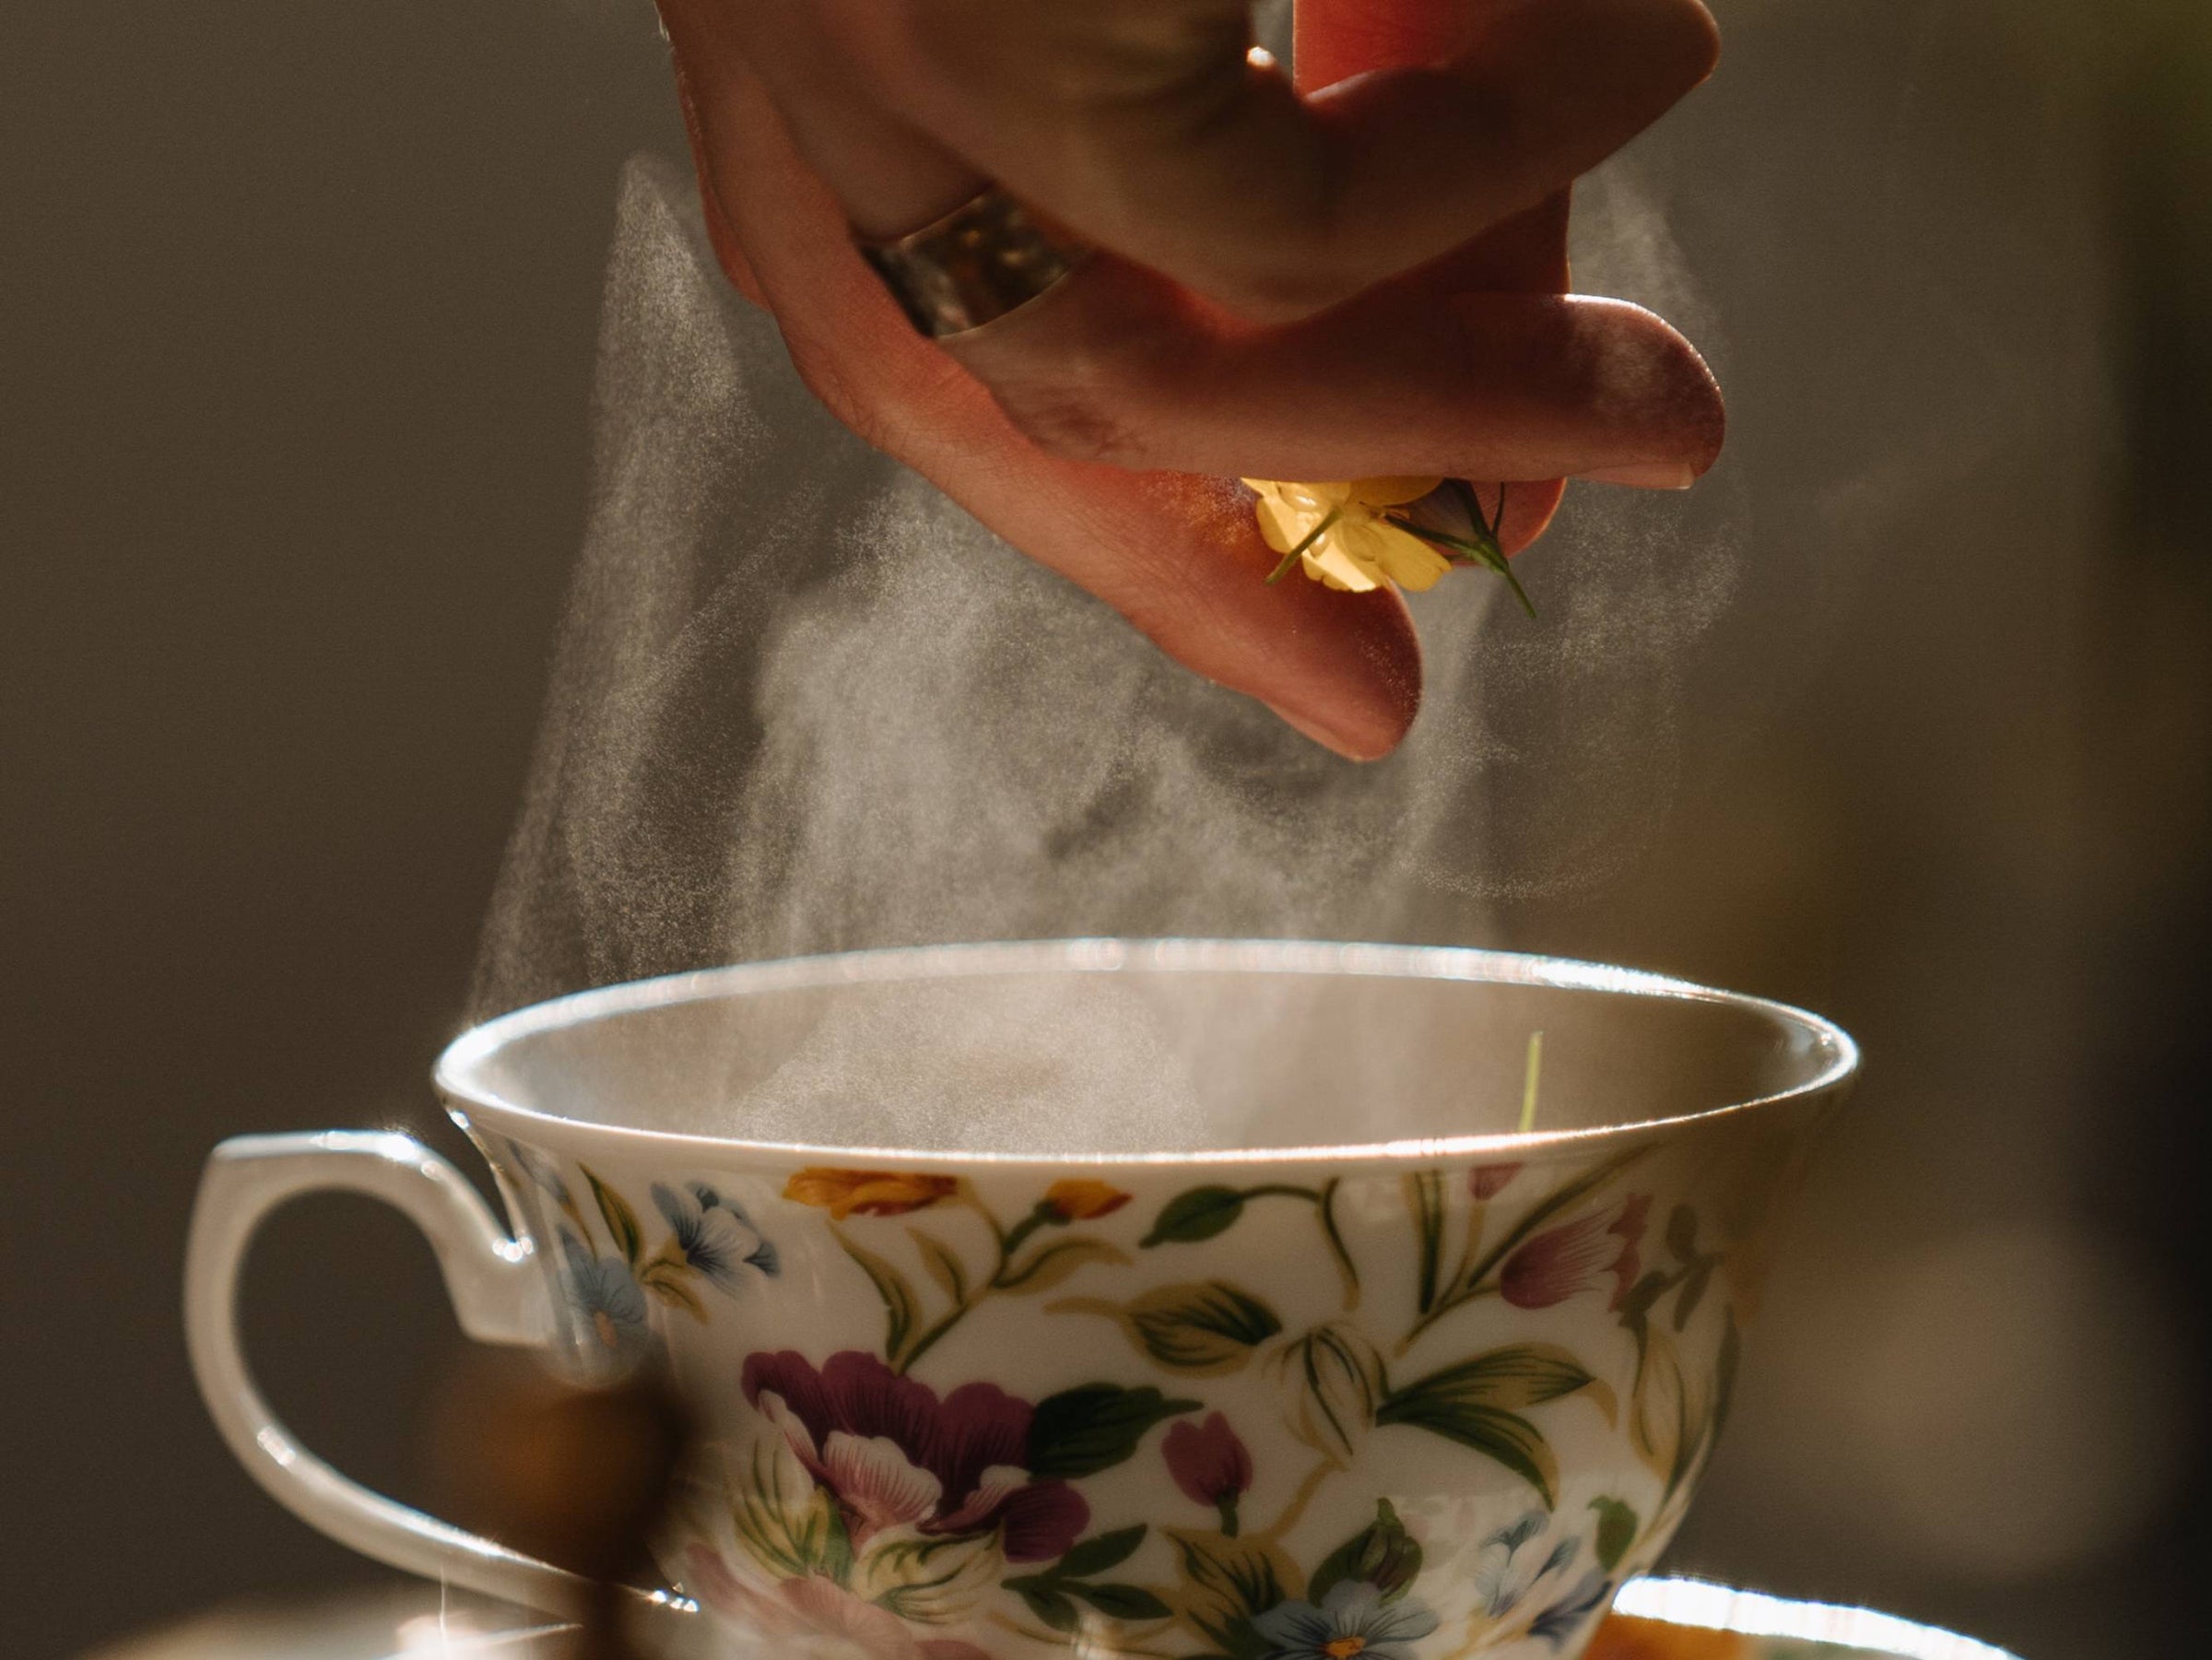 Tè e tisane: un'esperienza sensoriale millenaria